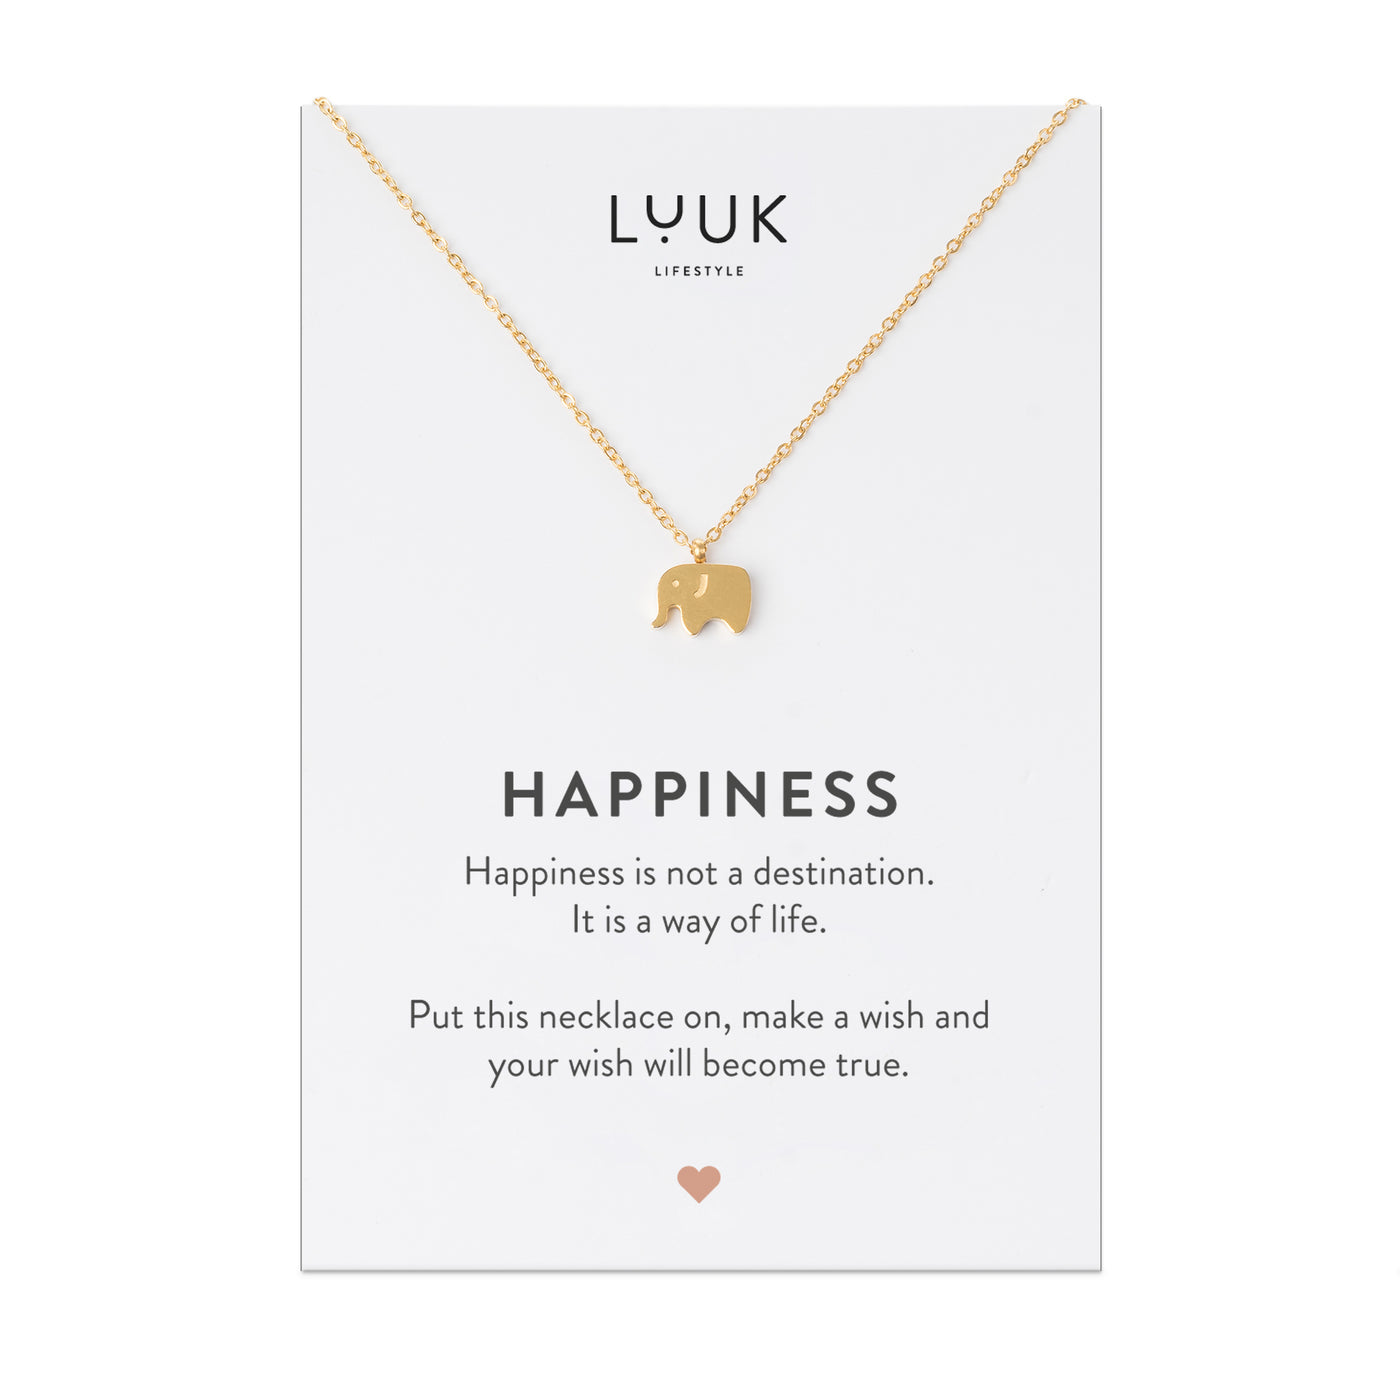 Goldene Halskette mit Elefant Anhänger auf Happiness Spruchkarte von der Brand Luuk Lifestyle